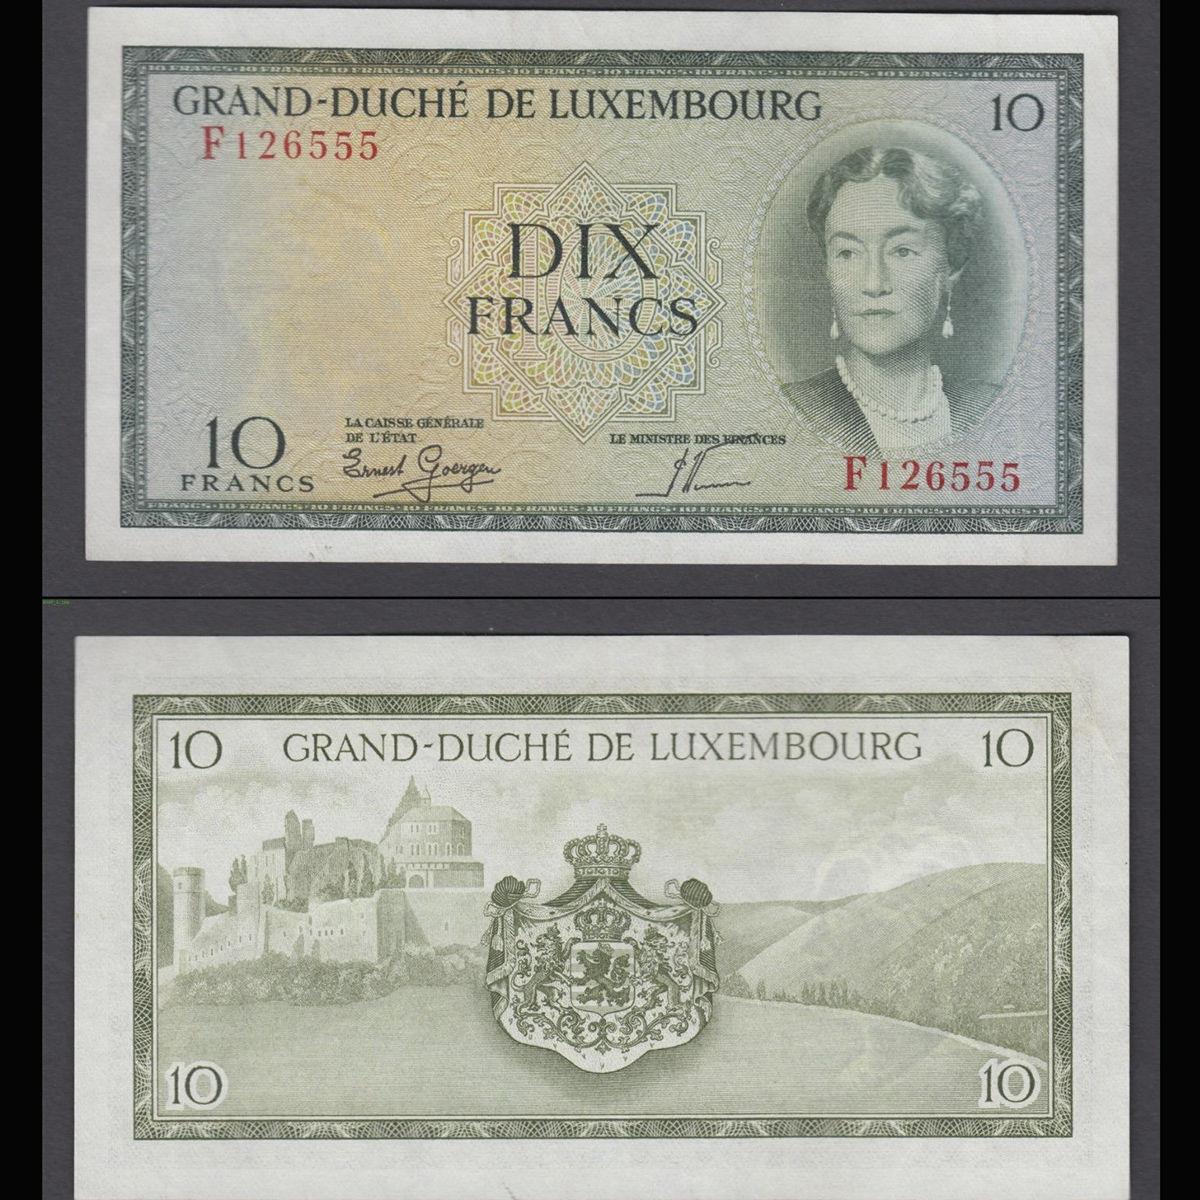 Luxembourg (Lúc Xăm Bua) 10 francs 1954